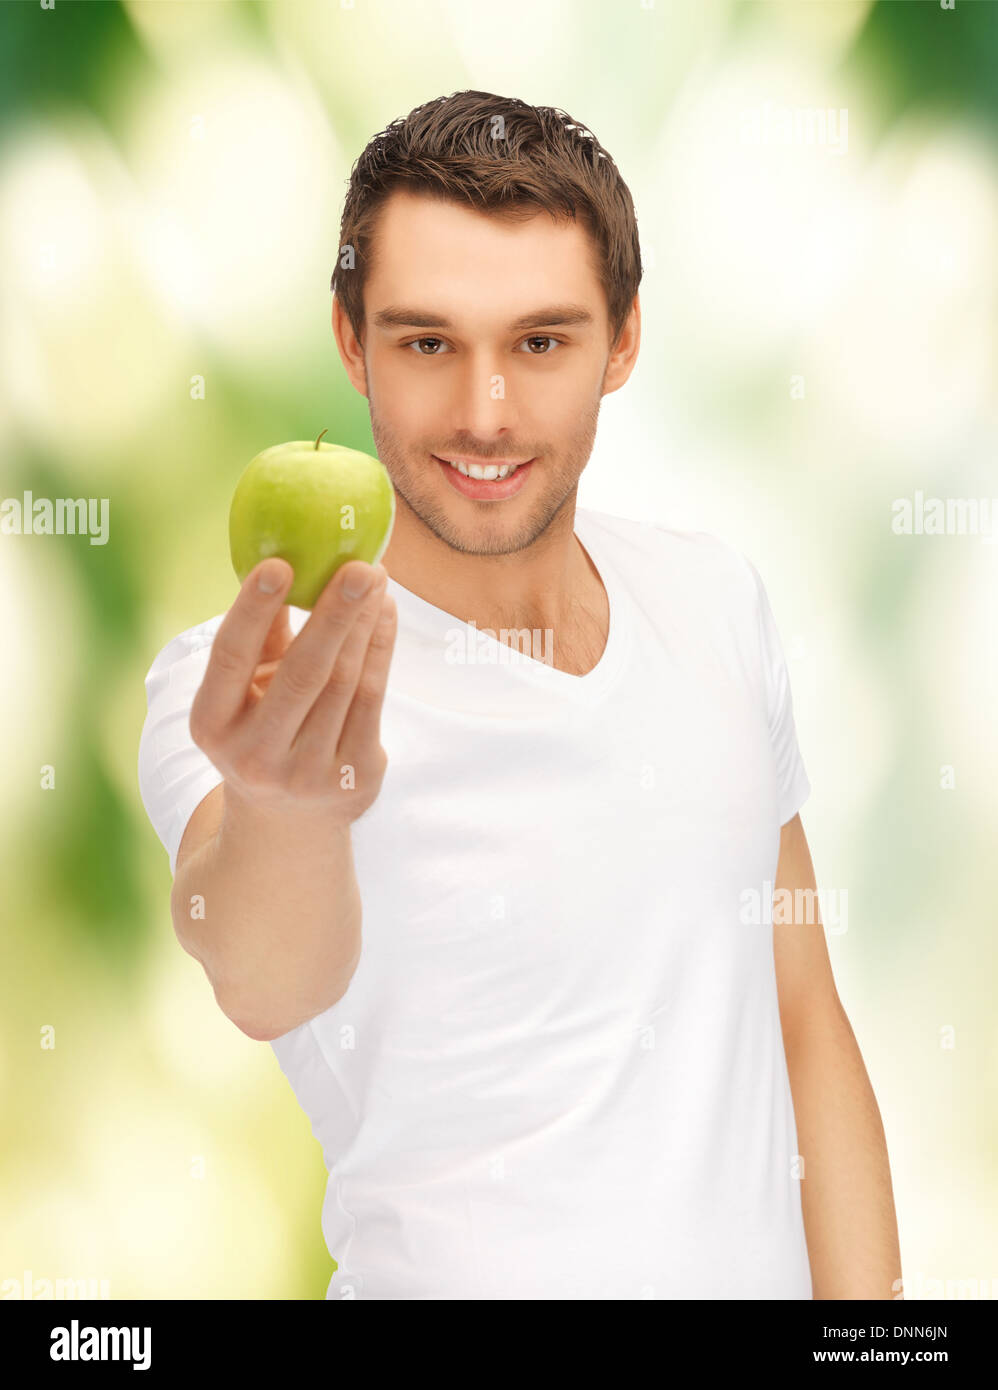 Кинуть яблоко. Белоснежная улыбка с яблоком. Кидает яблоко. Парень кидает яблоко. Кидаются яблоками.